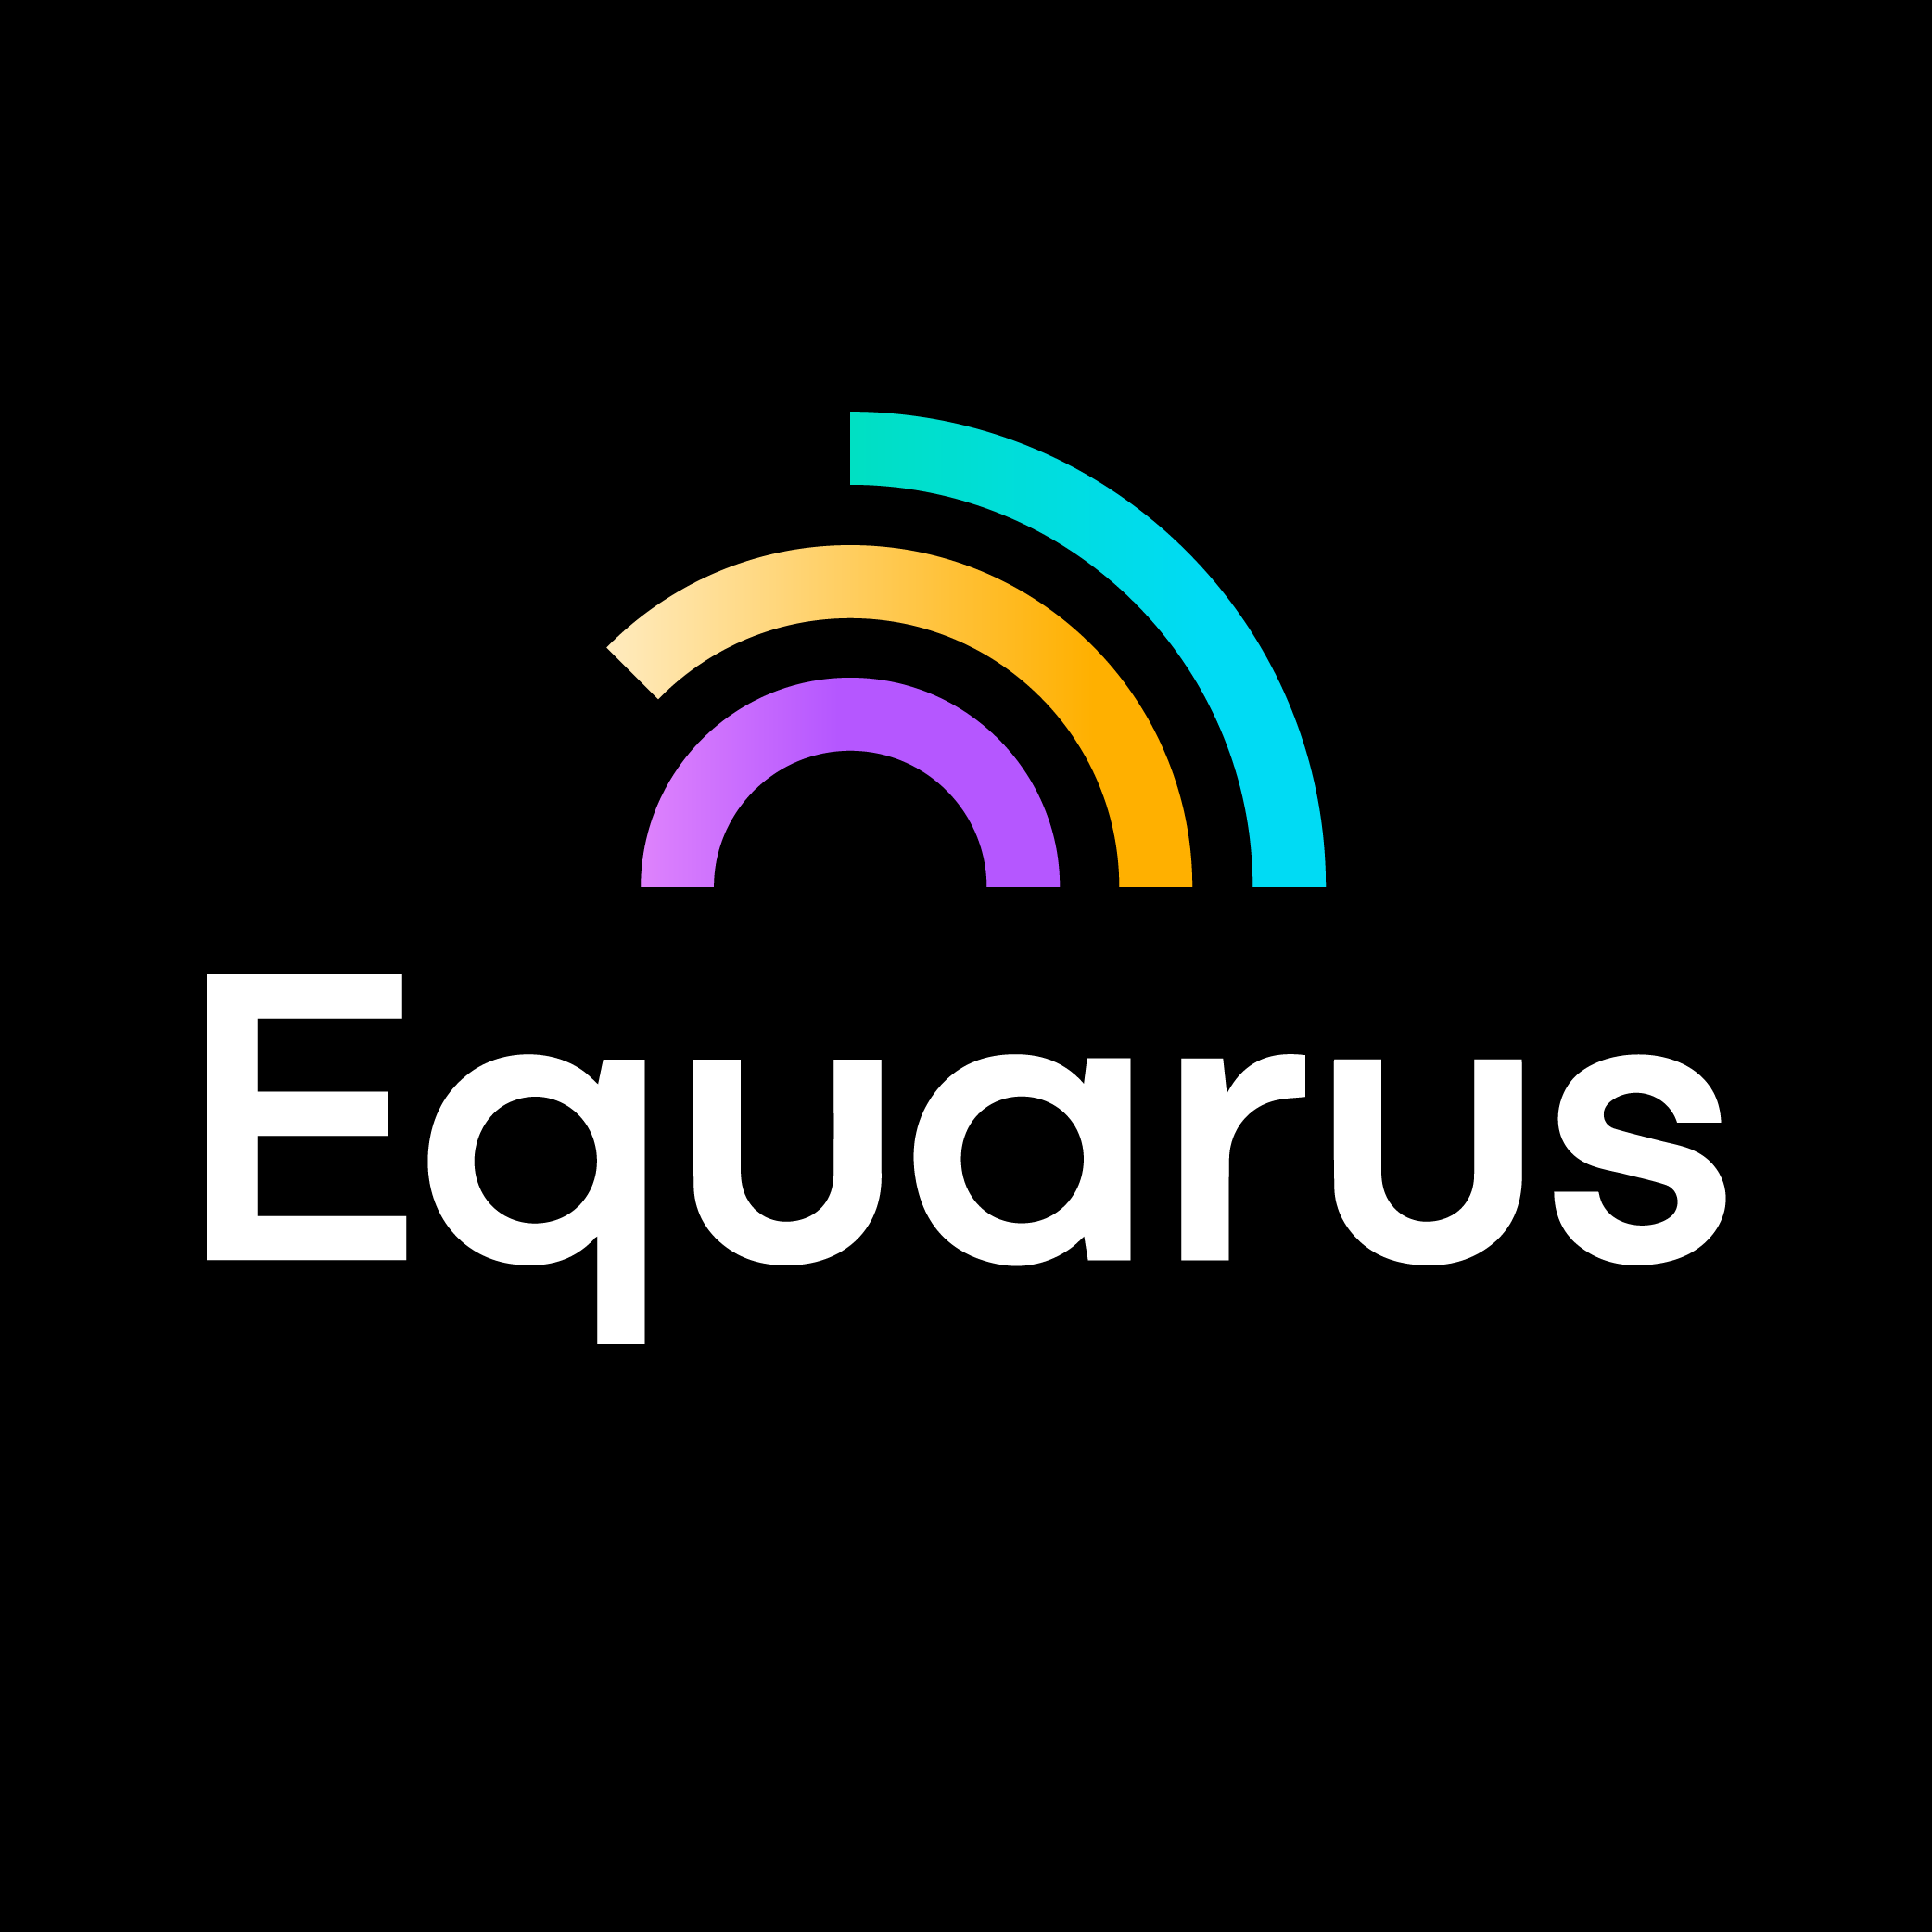 Equarus.com